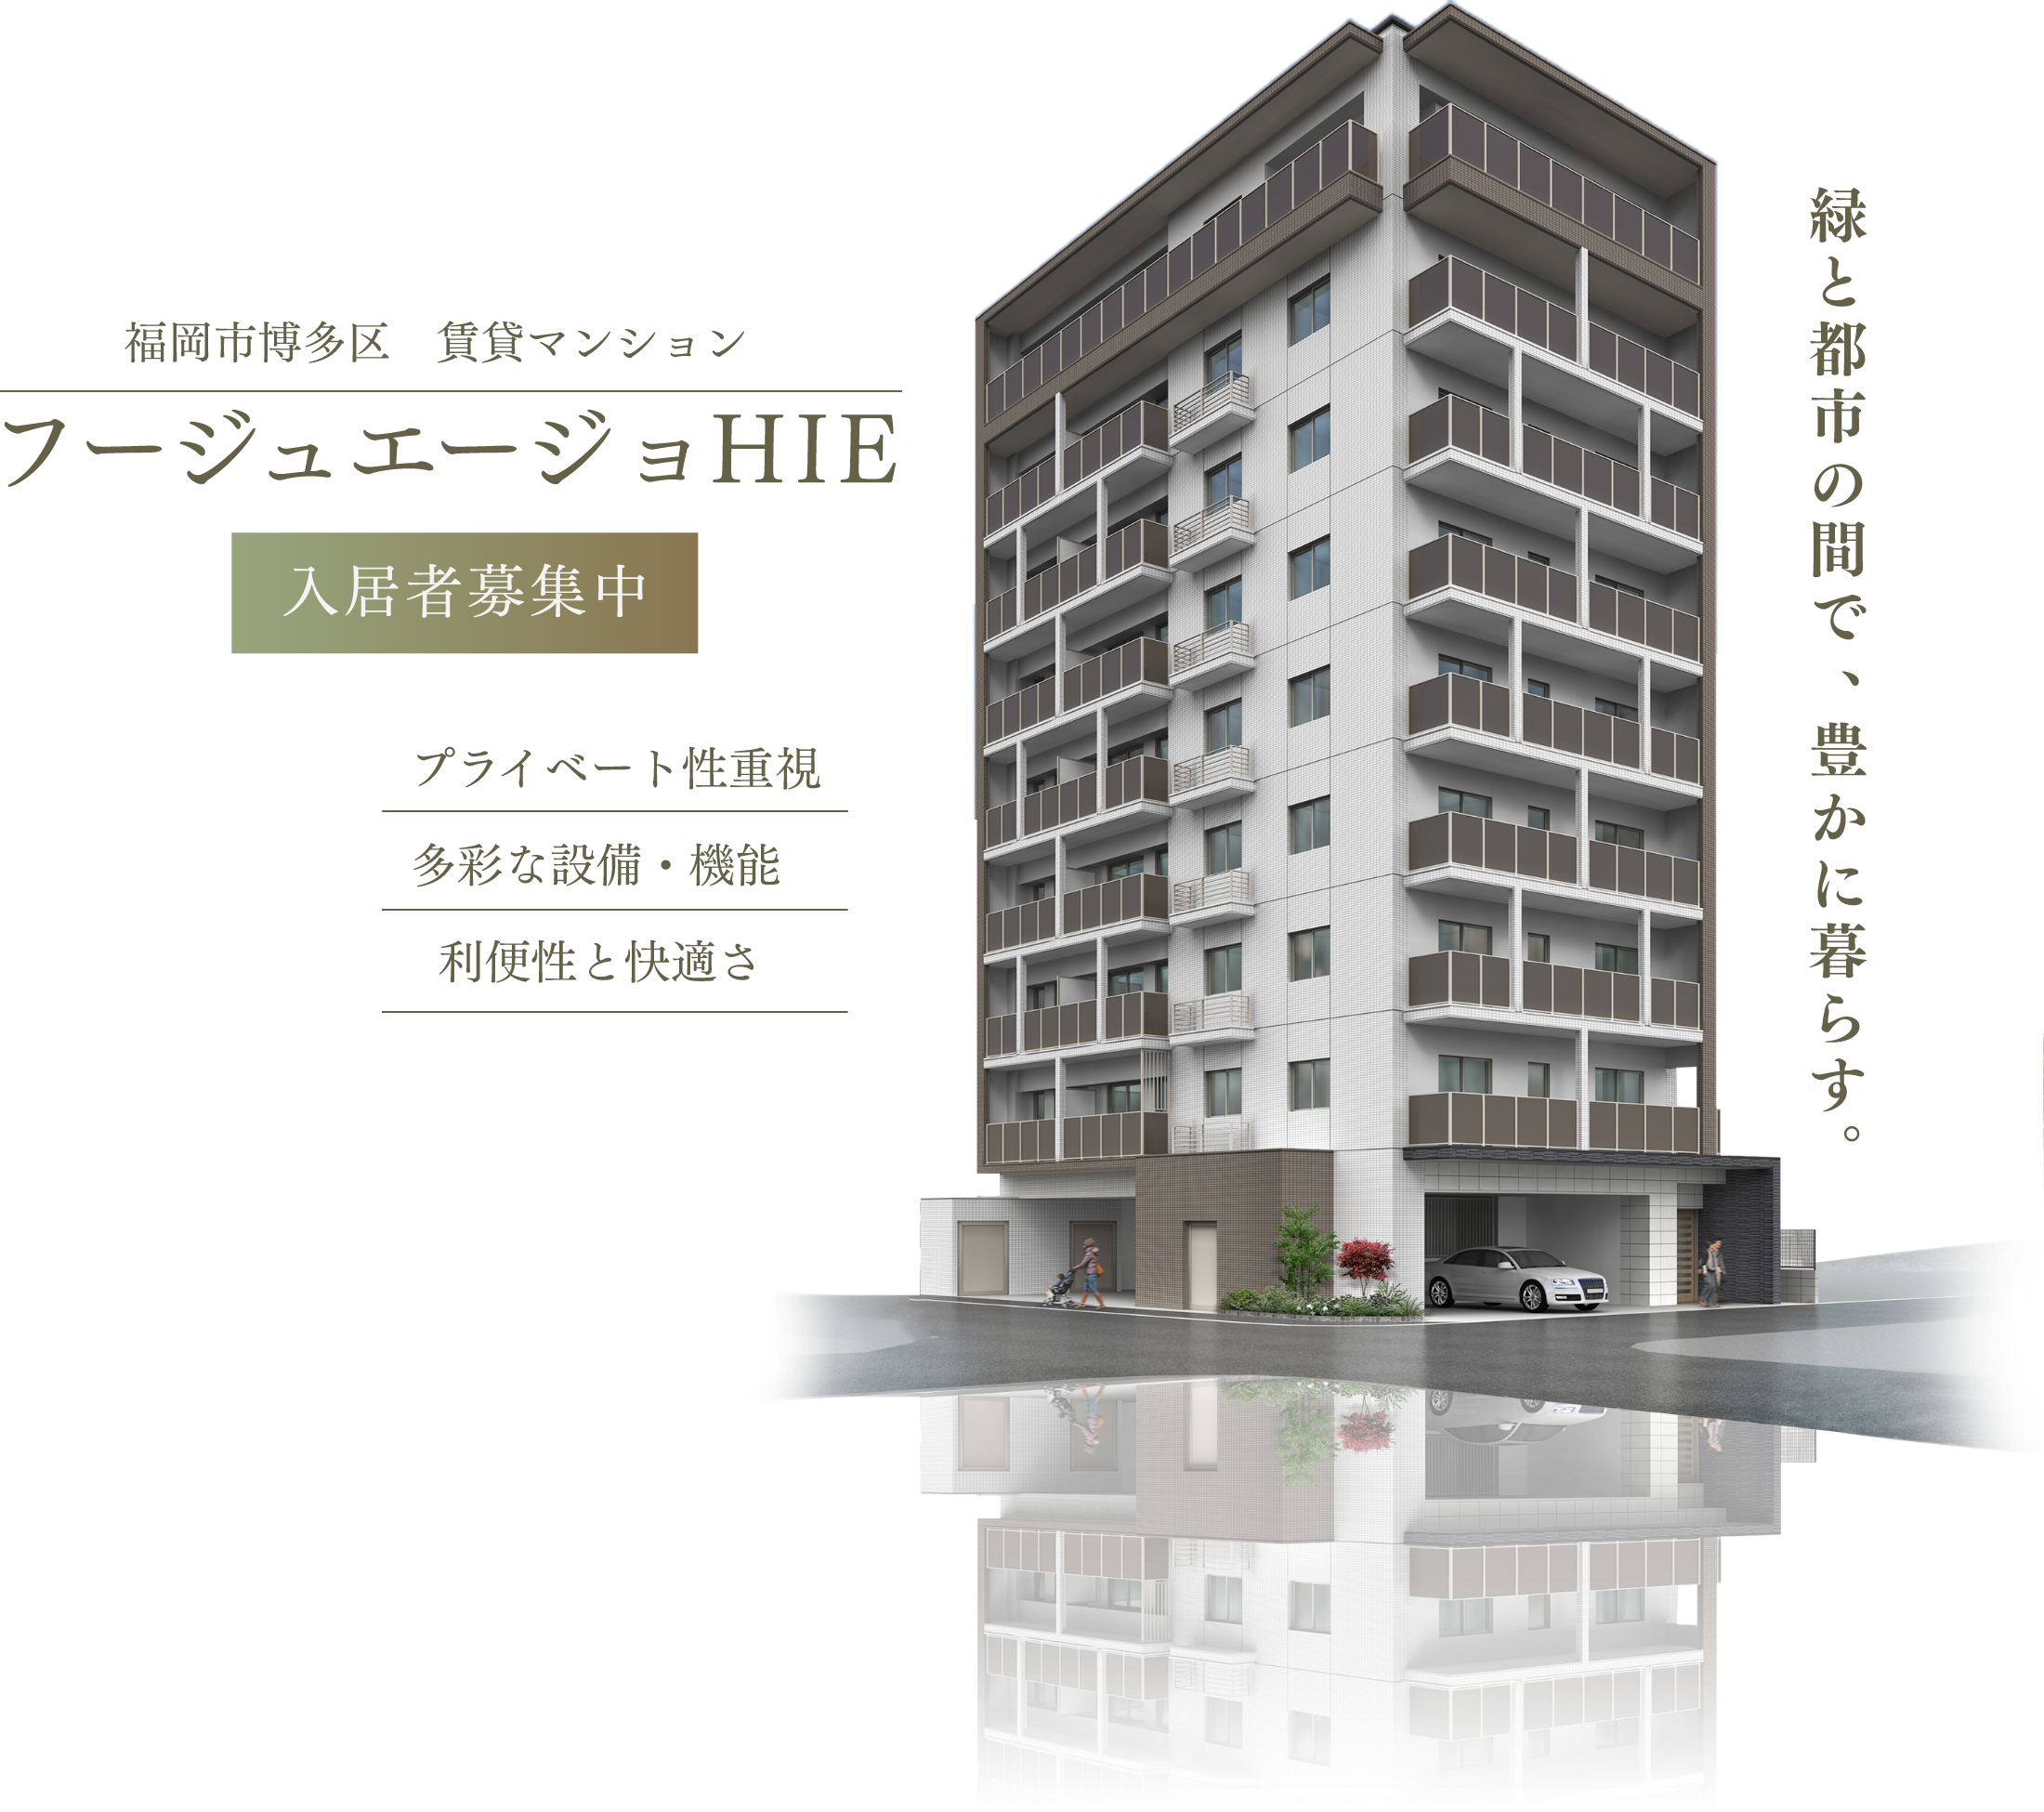 フージュエージョHIE　福岡市博多区 賃貸マンション 入居者募集中　プライベート性重視 多彩な設備・機能 利便性と快適さ　緑と都市の間で豊かに暮らす。